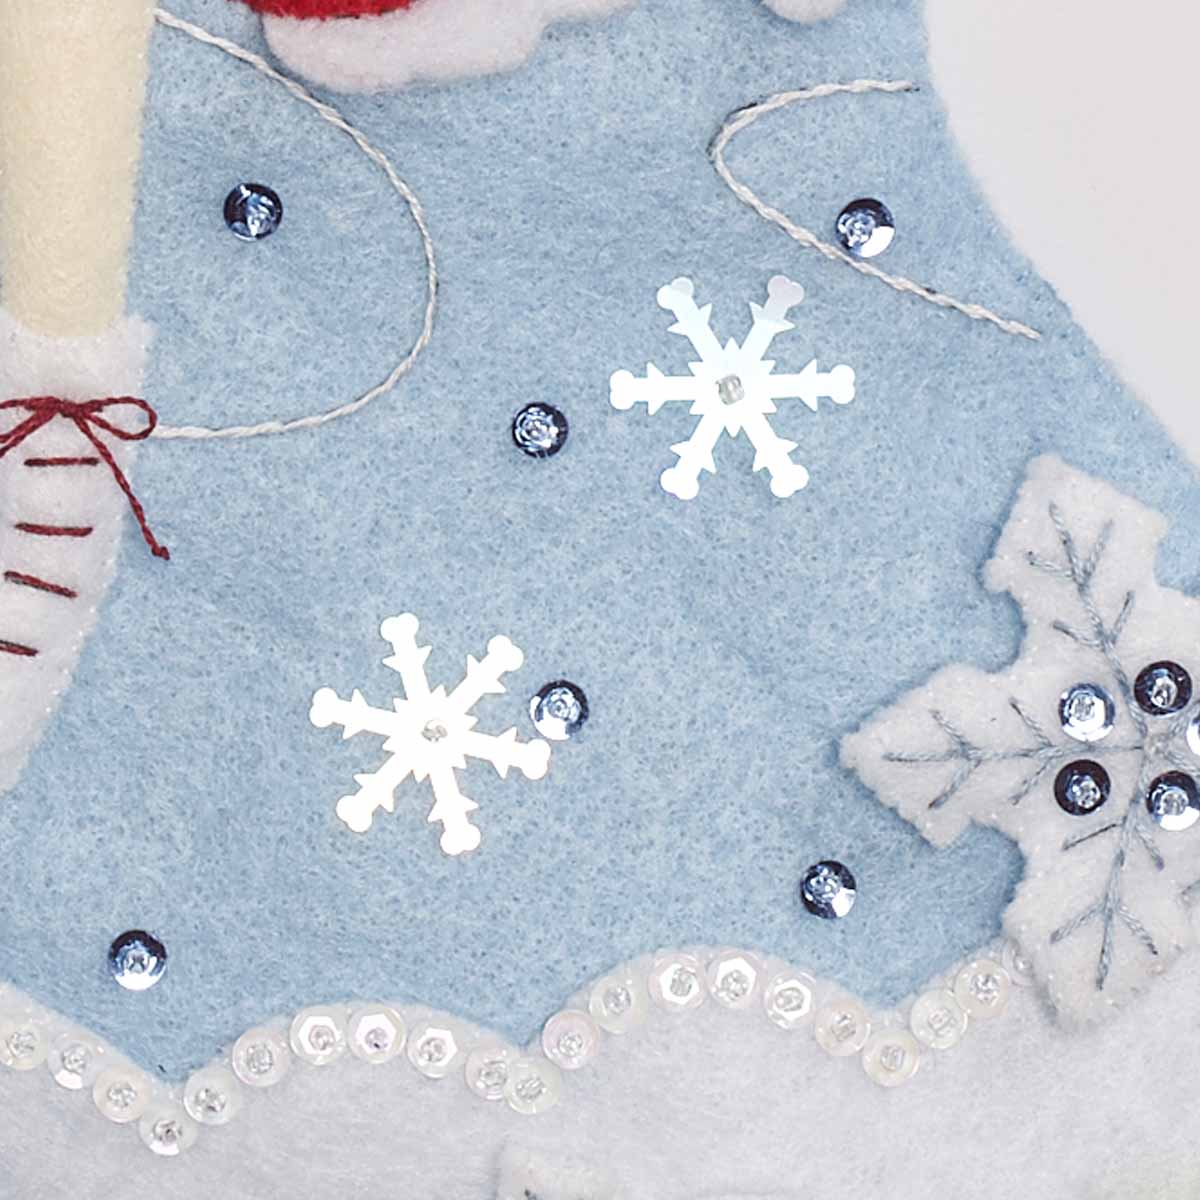 Bucilla ® Seasonal - Felt - Stocking Kits - A Christmas Skate - 86979E